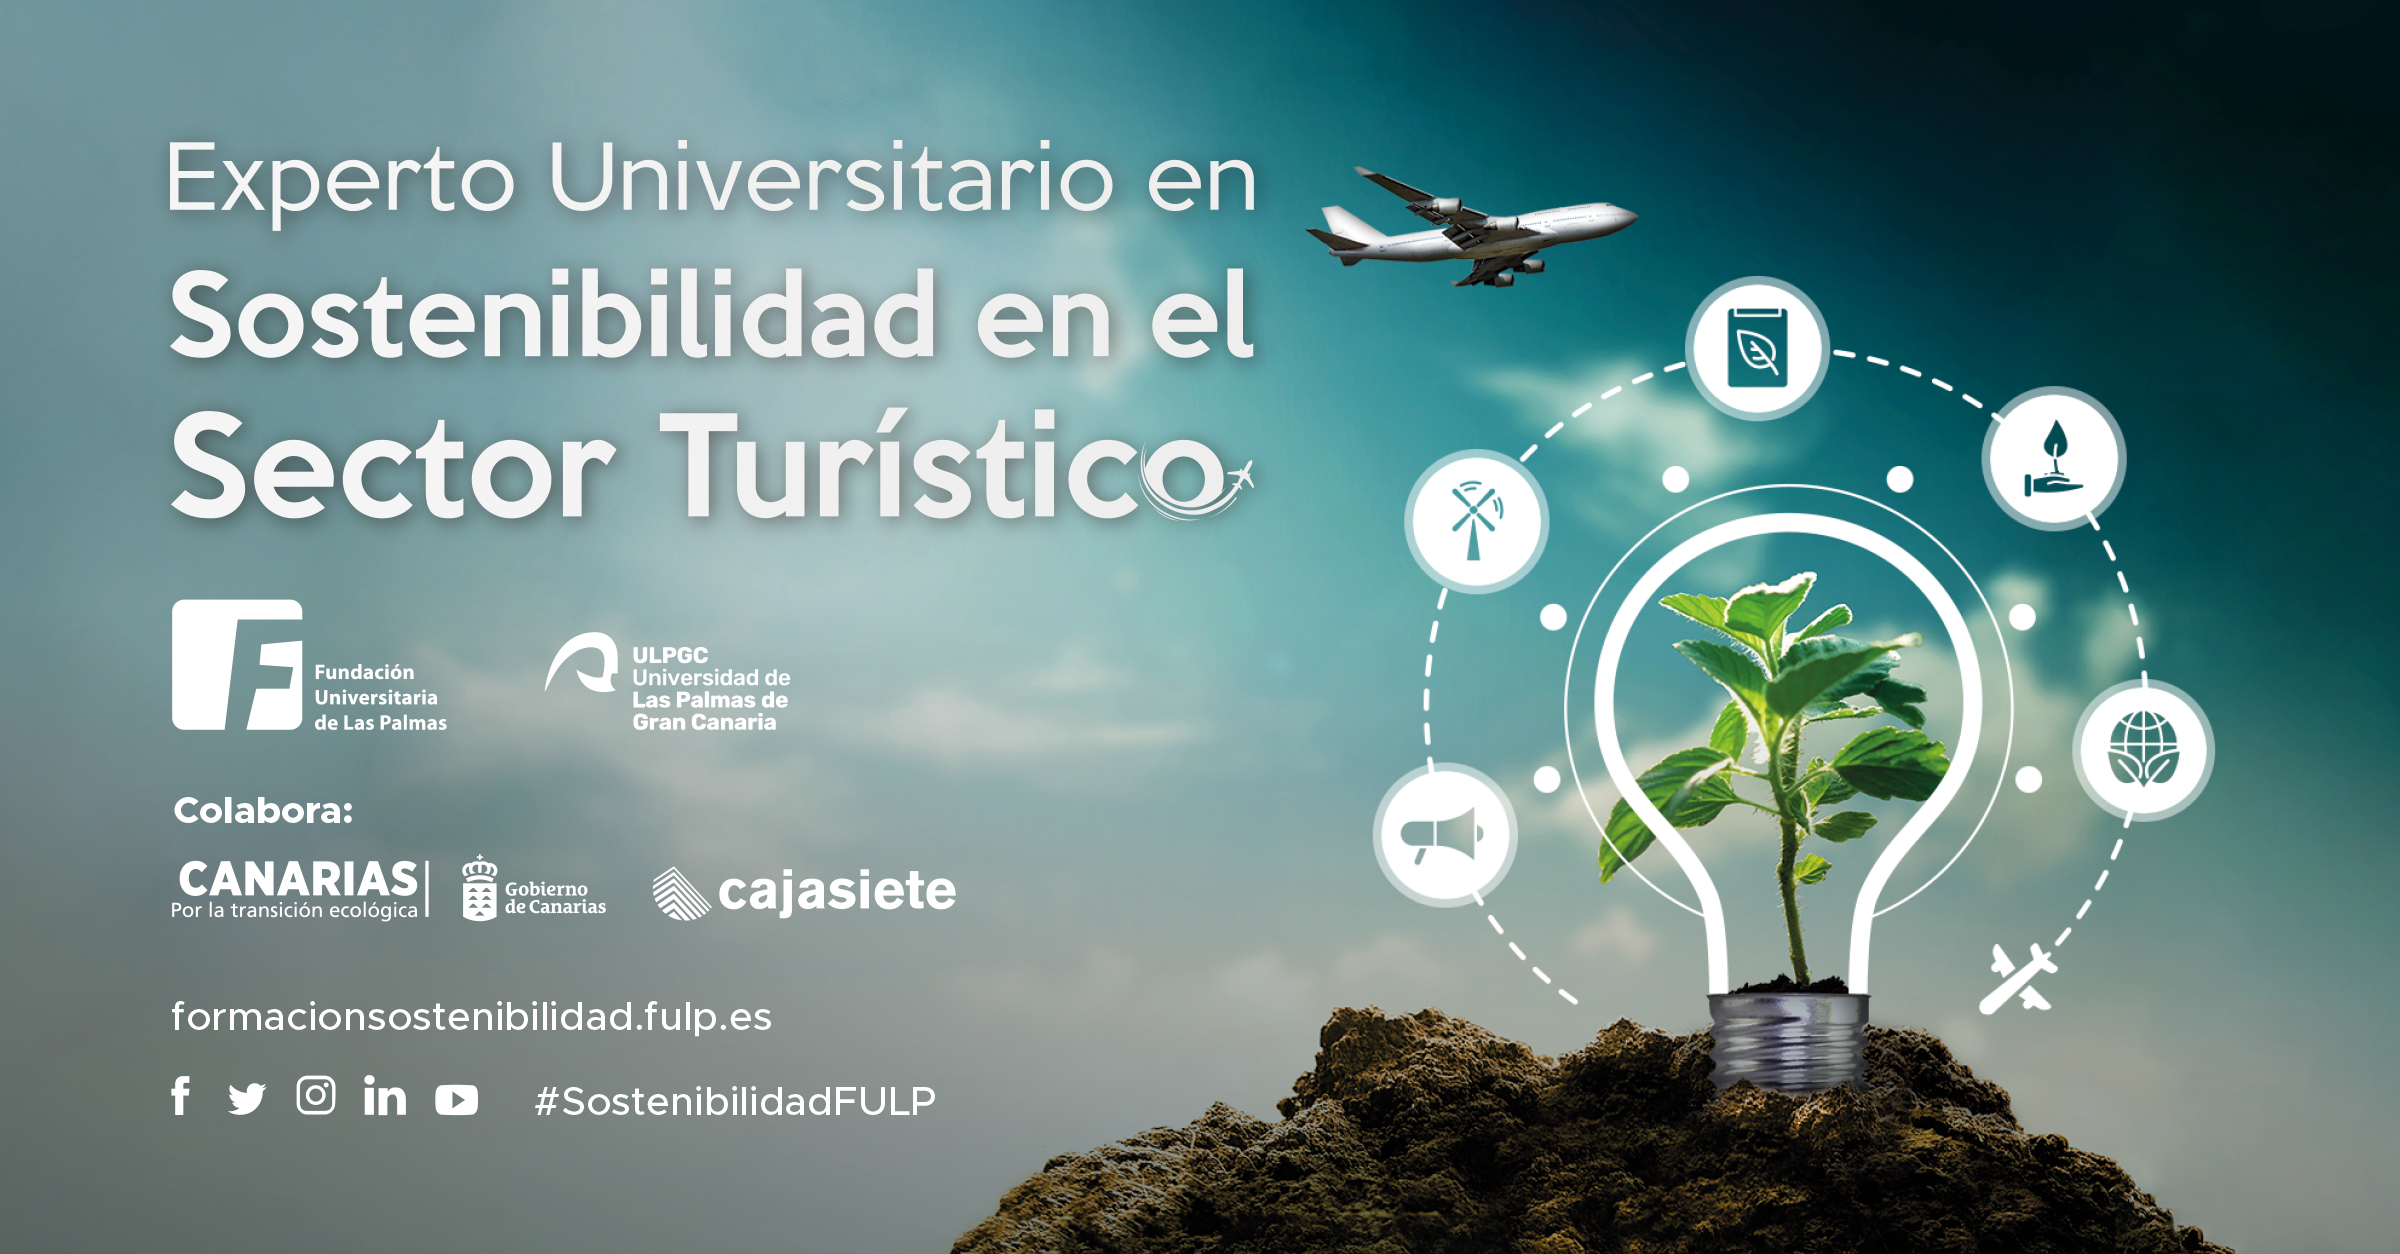 La Fundación Universitaria oferta 20 becas para el Experto Universitario en Sostenibilidad en el Sector Turístico